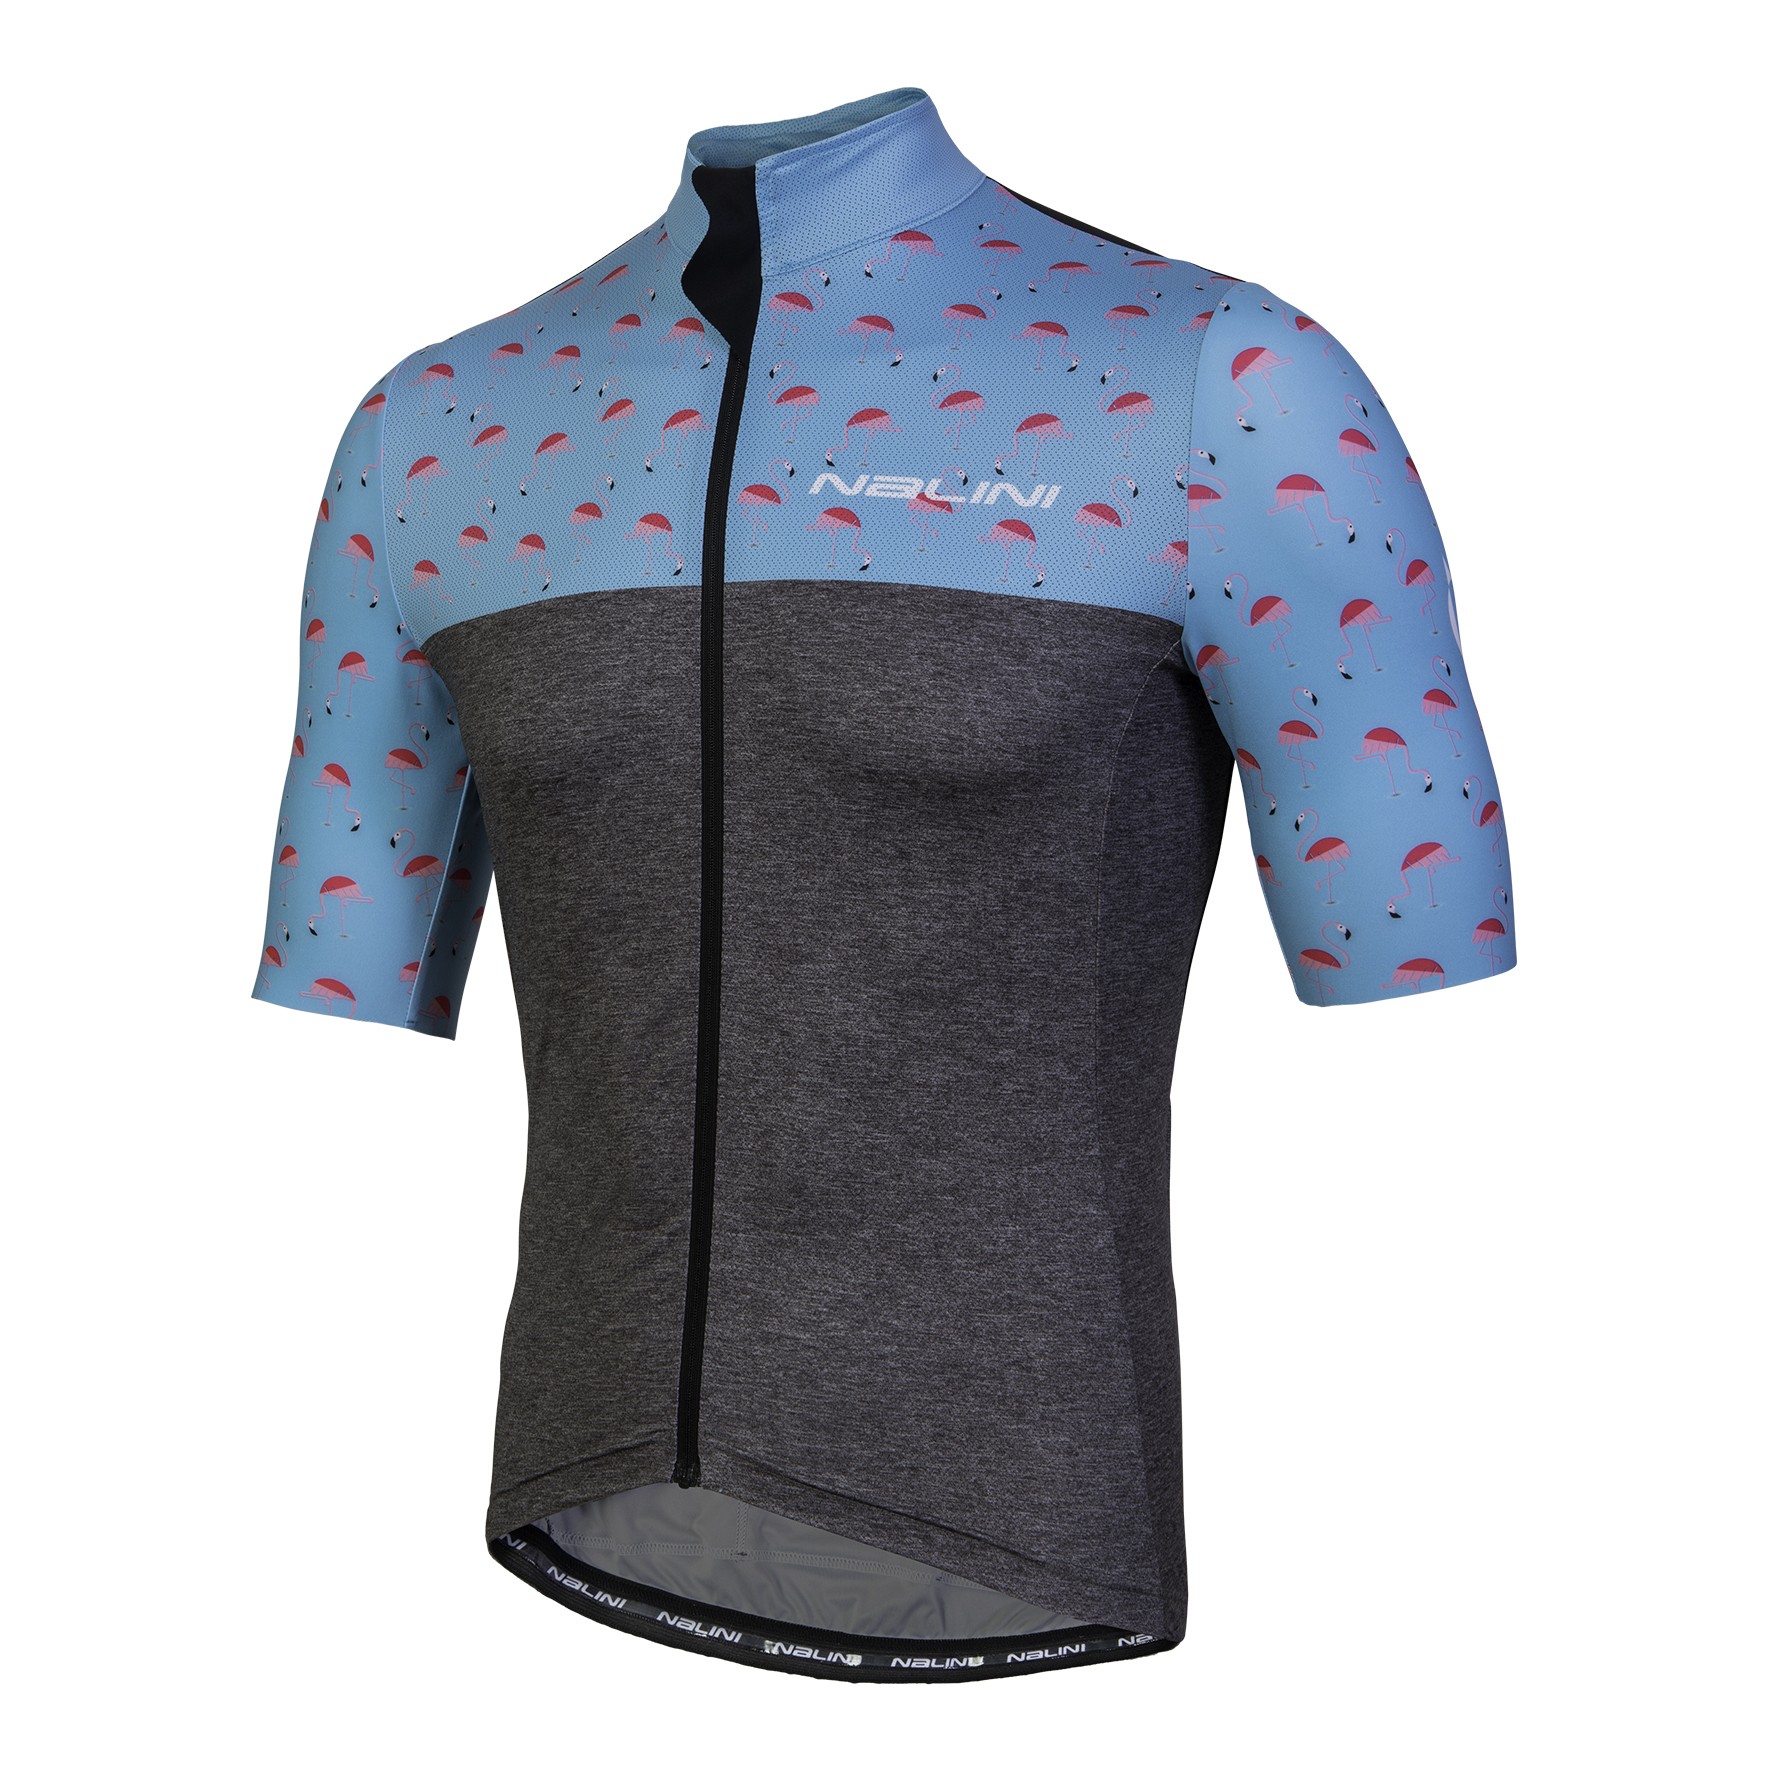 Nalini centenario fietsshirt met korte mouwen grijs flamingo print blauw